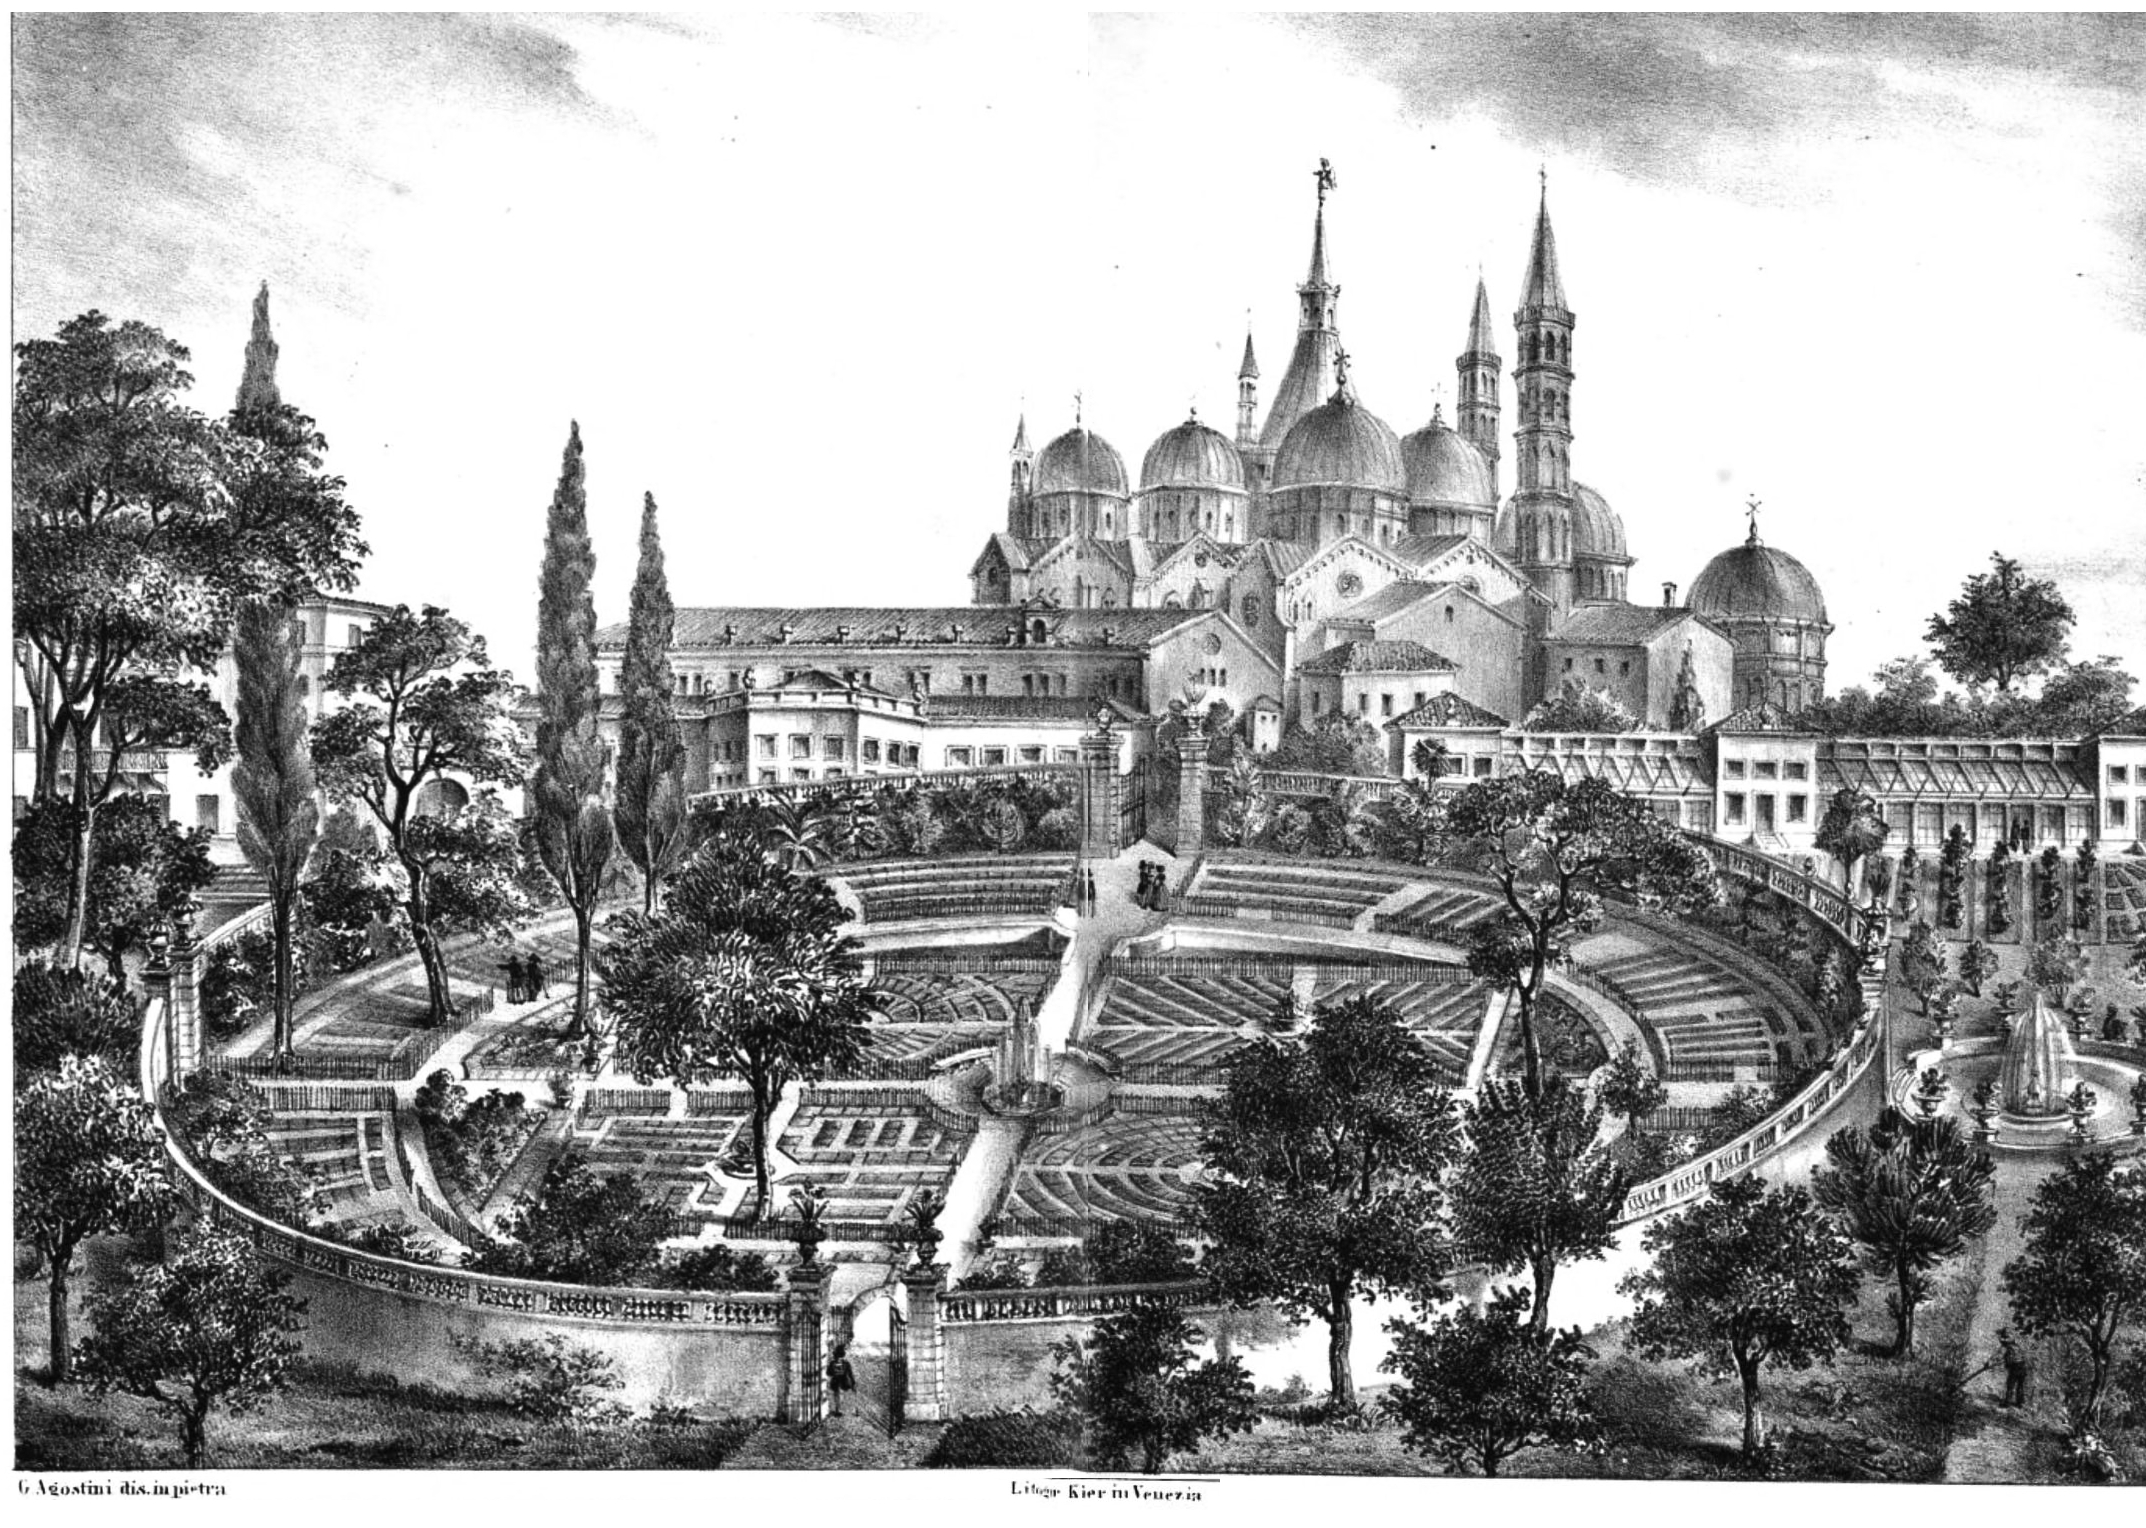 Ilustração antiga e em preto e branco do Jardim Botânico de Pádua, na Itália. Há uma construção ao fundo, diversas árvores e um jardim redondo ao centro.